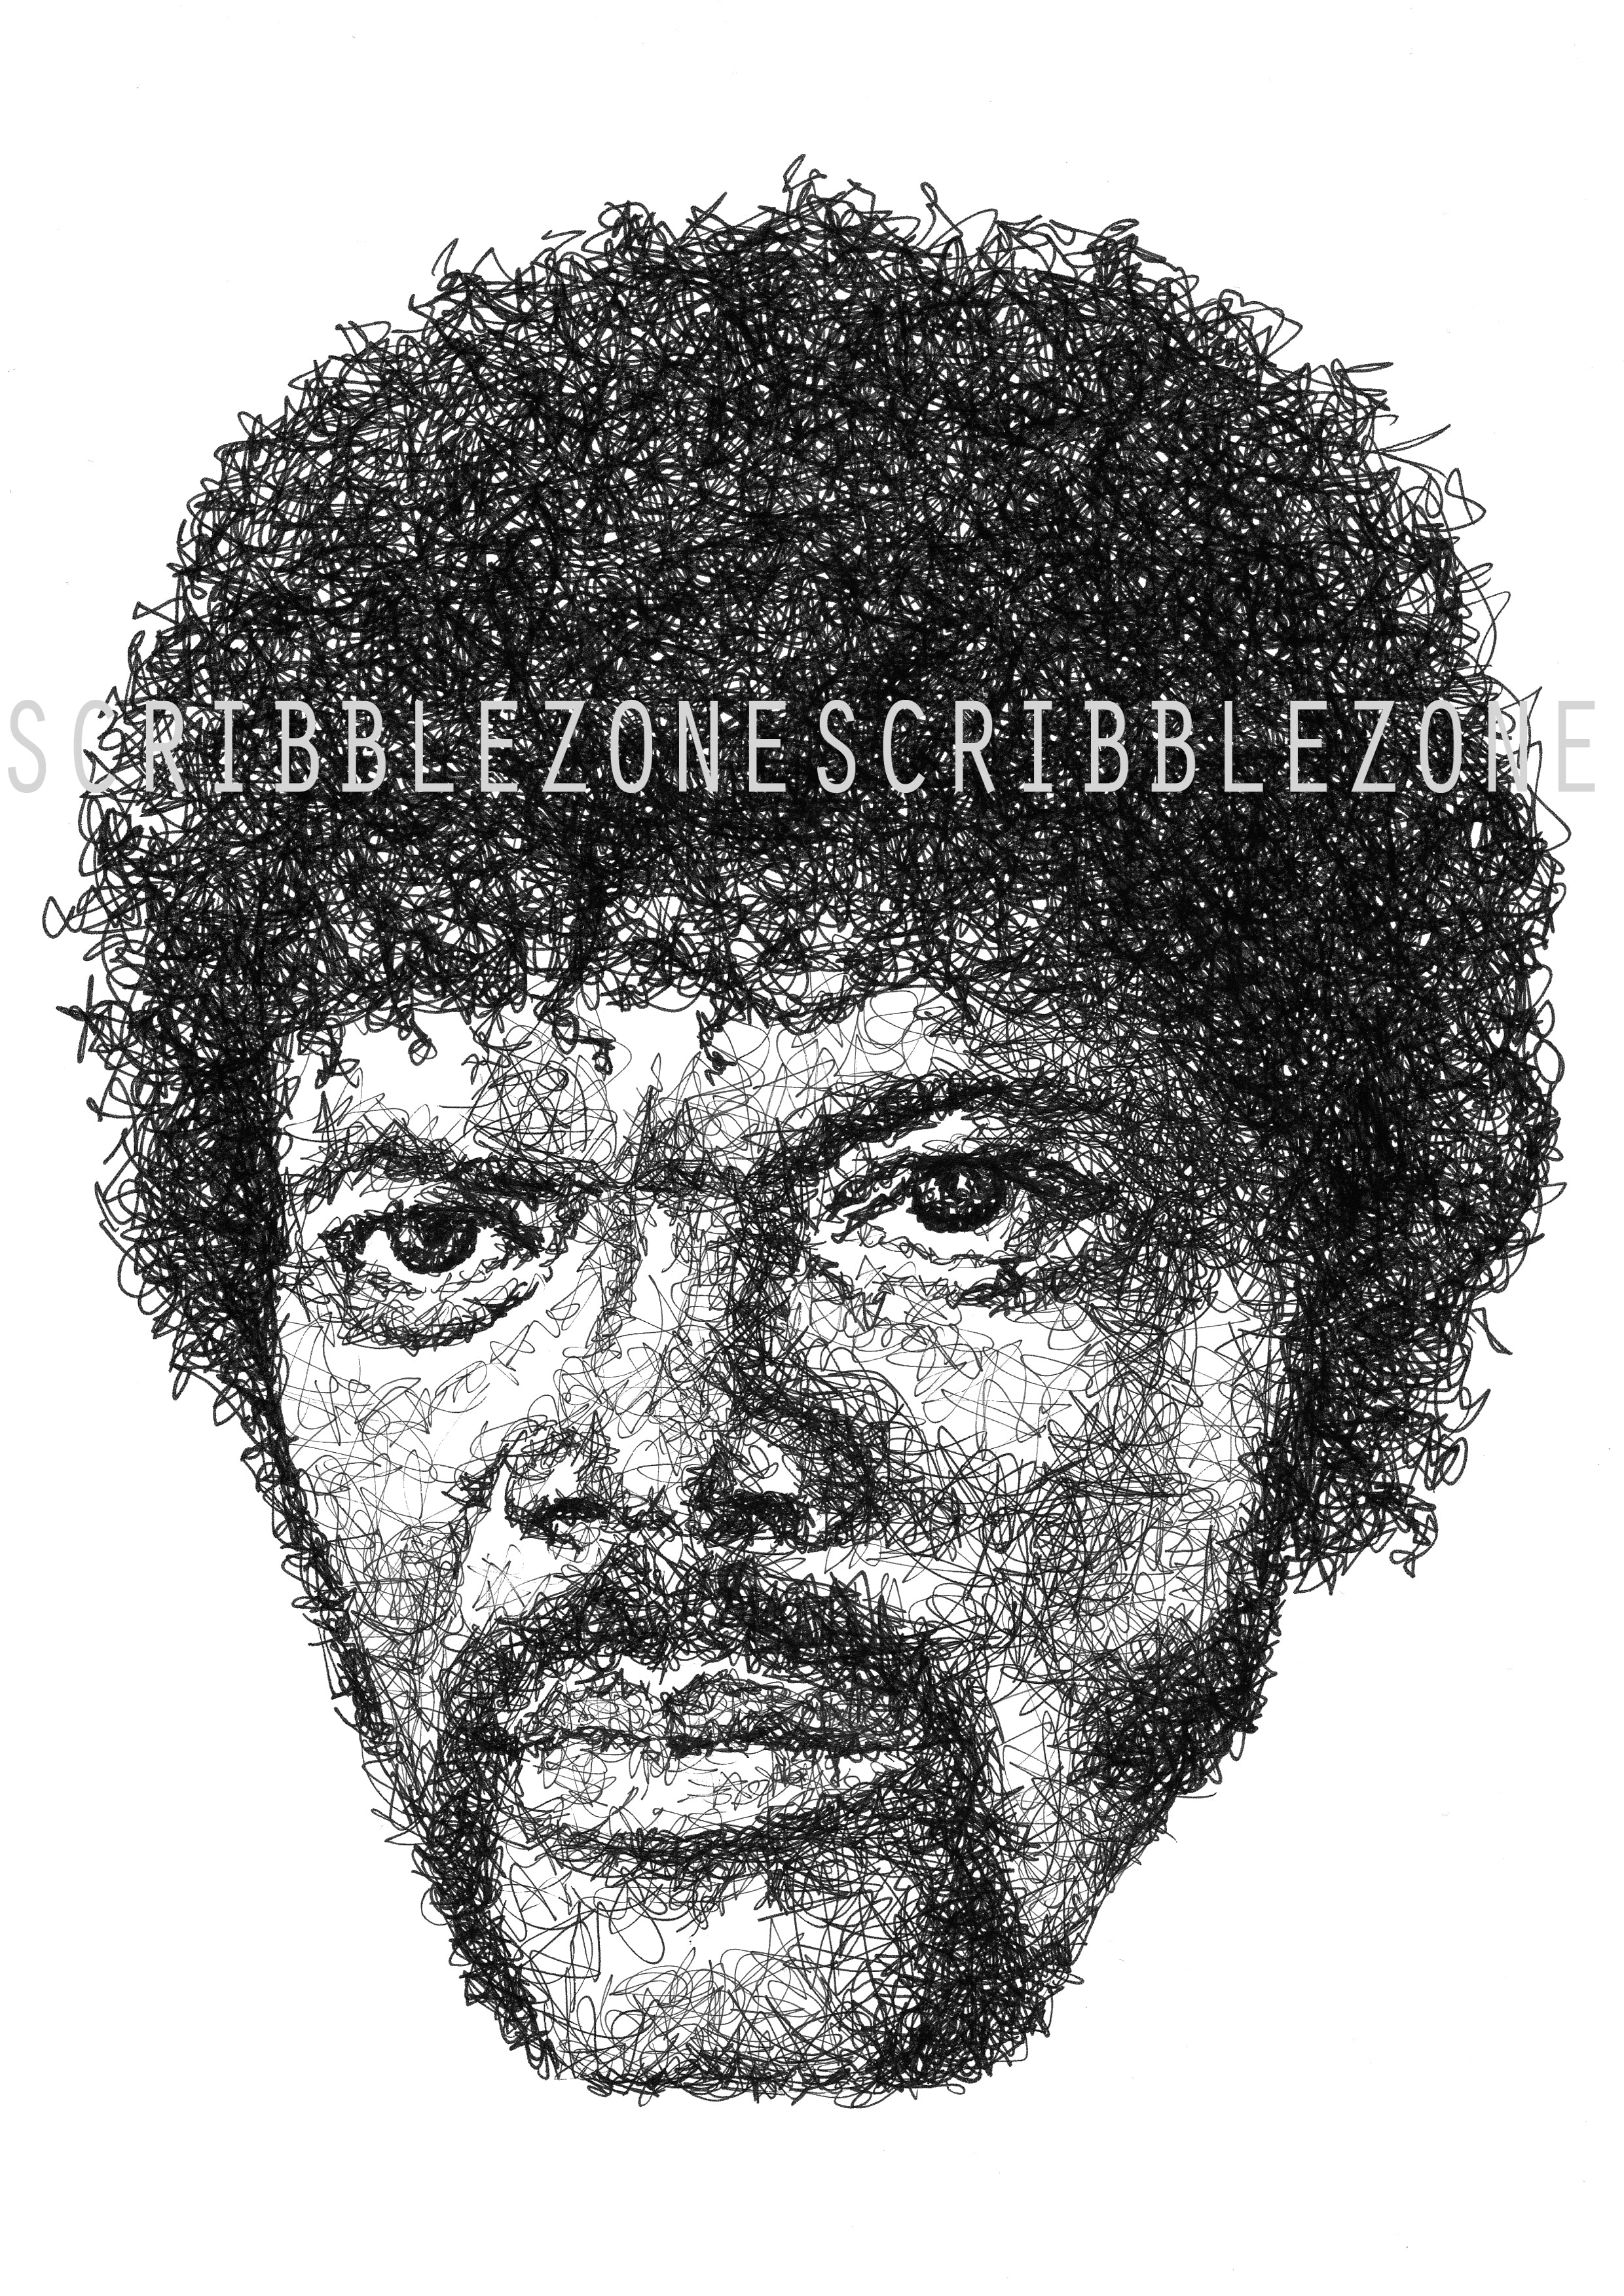 Samuel L Jackson in Pulp Fiction, Portrait der Künstlerin Marilena Hamm alias Scribblezone, im unversechselbaren Scribble-Stil gezeichnet, mit Wasserzeichen.